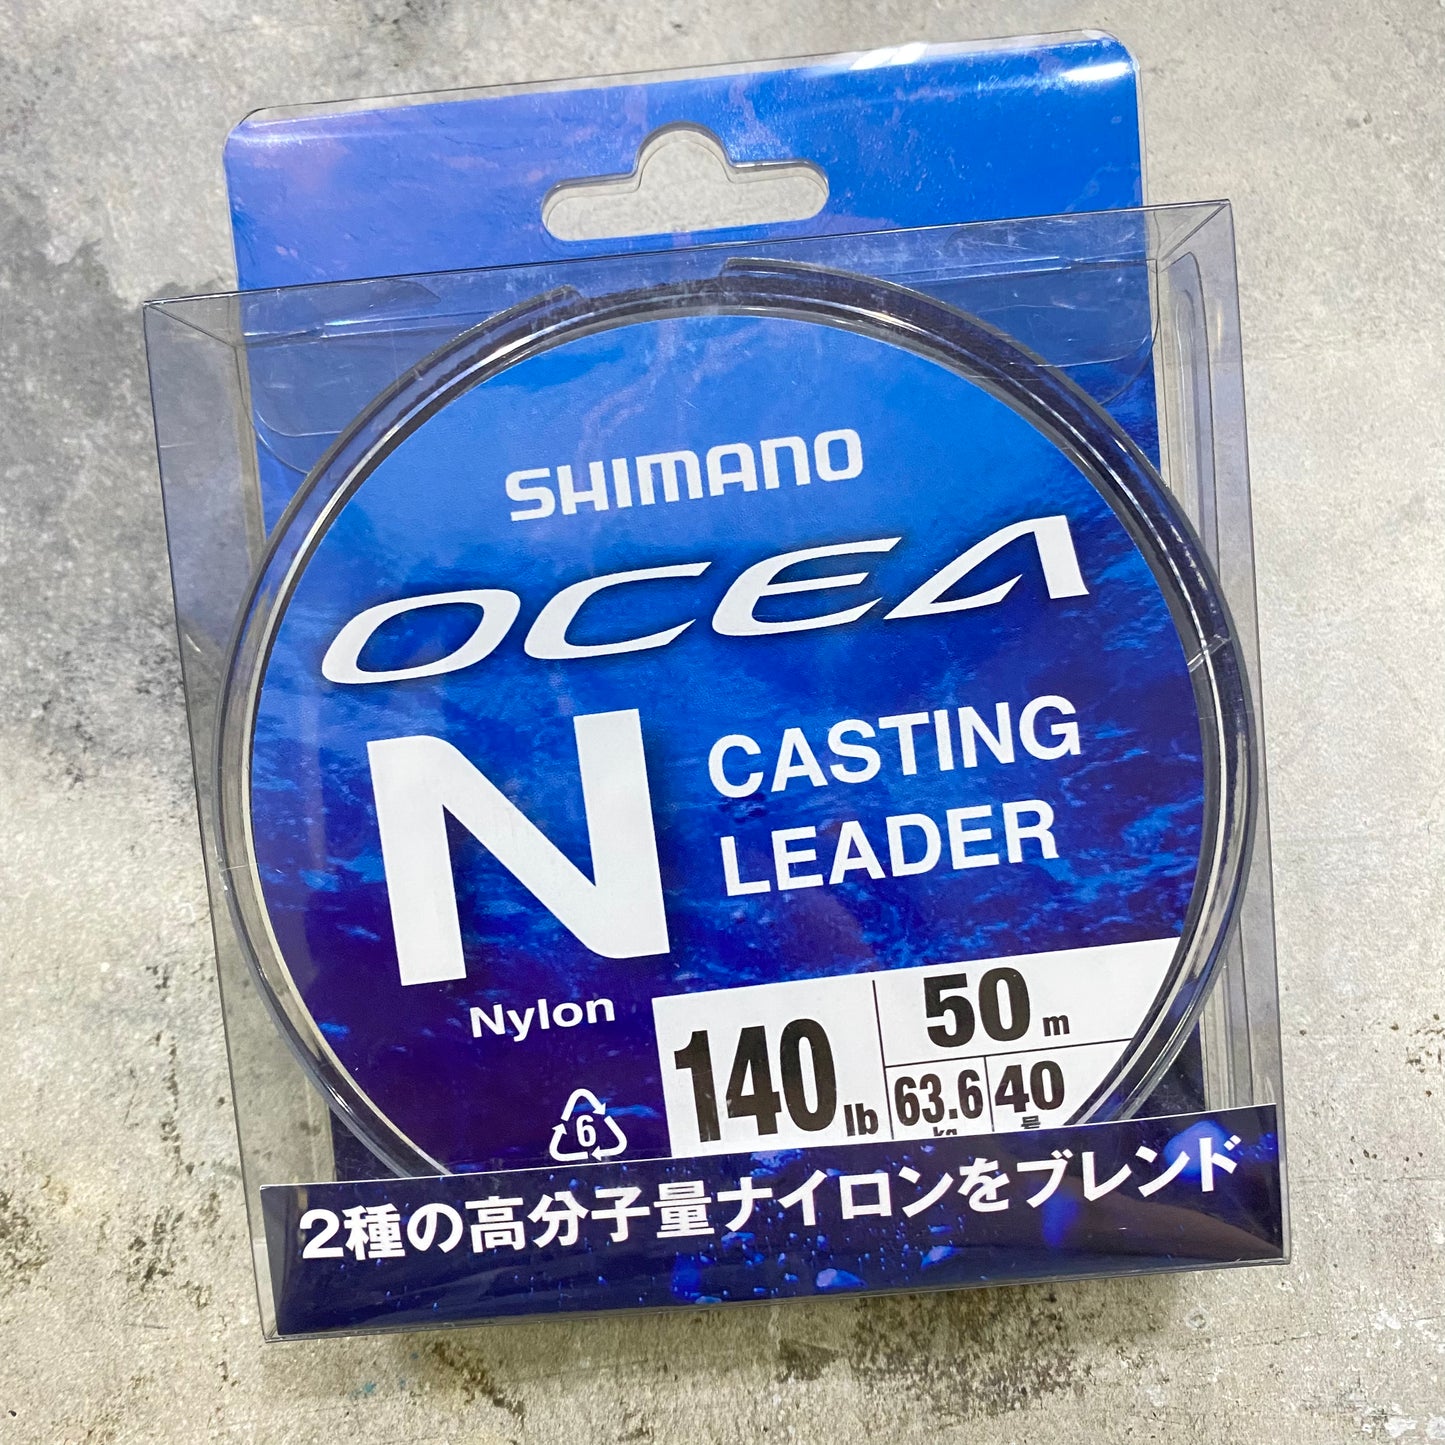 Ocean N Casting Leader Nylon